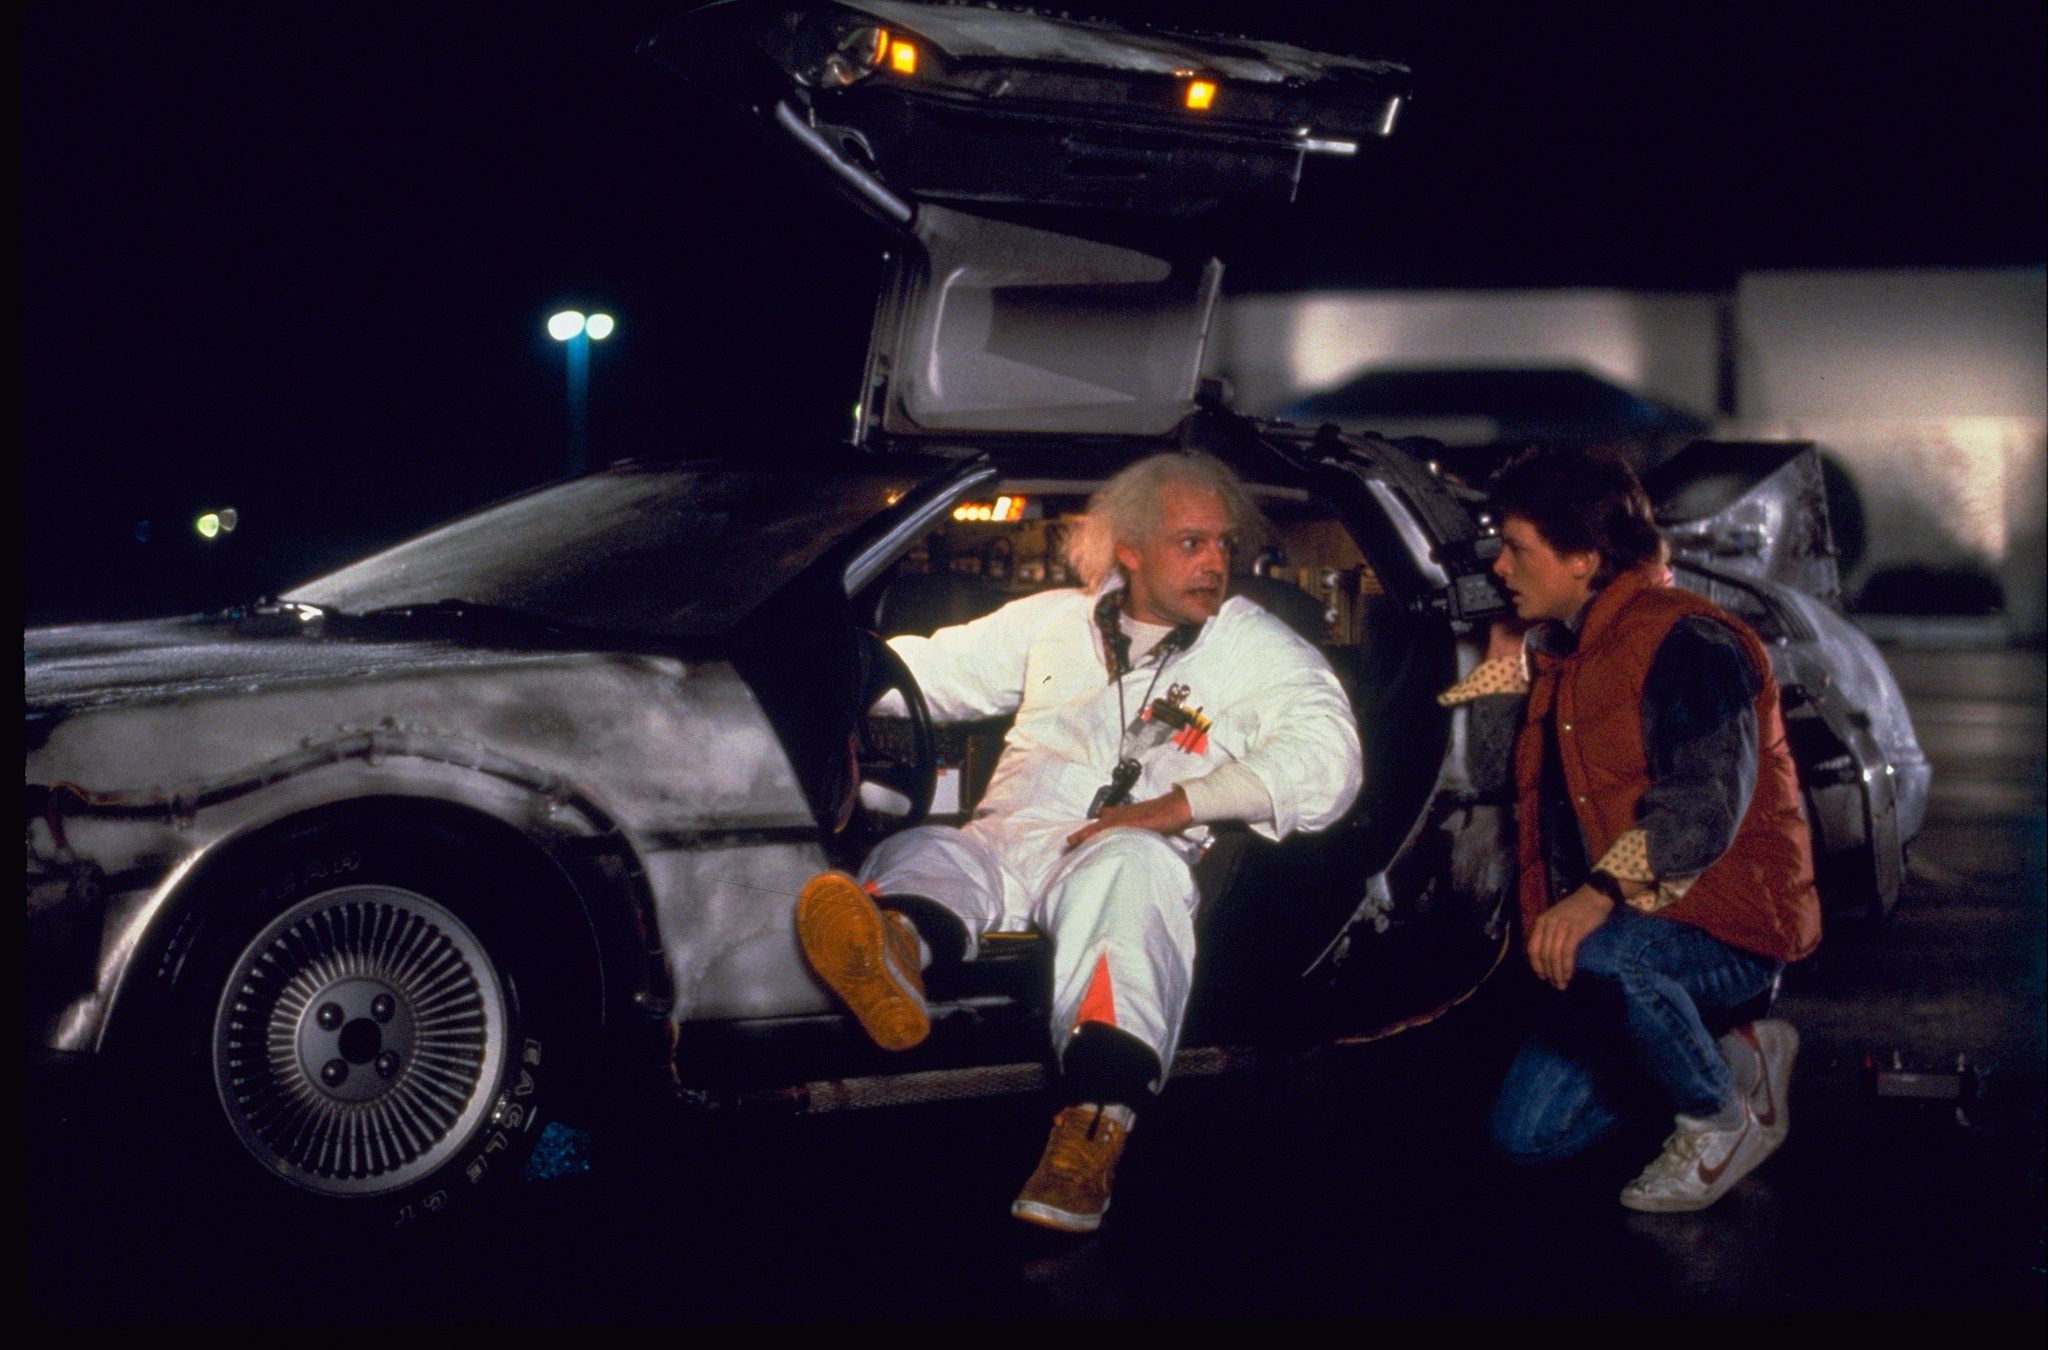 Ein Professor sitzt in dem Auto und unterhält sich mit einem Jungen - Szene aus dem Film Zurück in die Zukunft